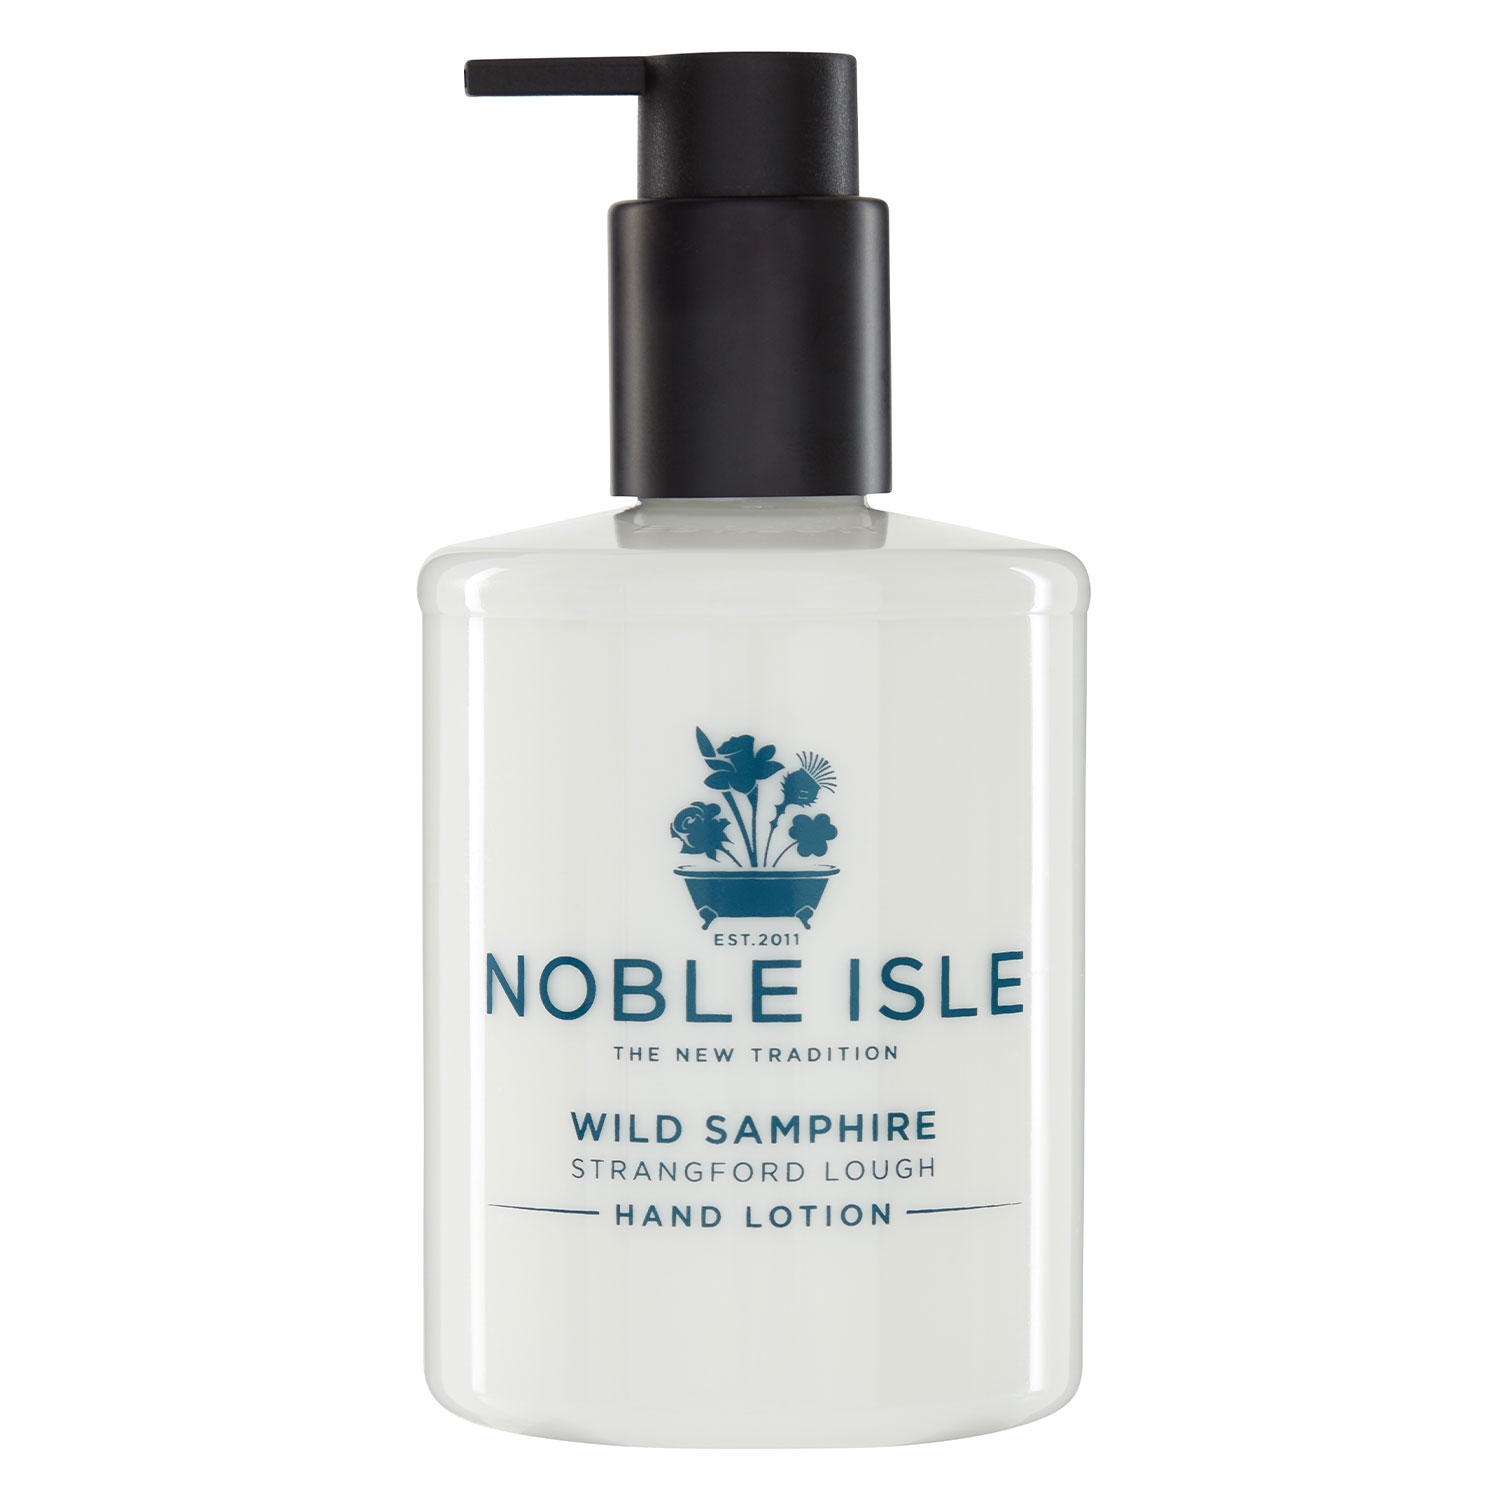 Produktbild von Noble Isle - Wild Samphire Hand Lotion